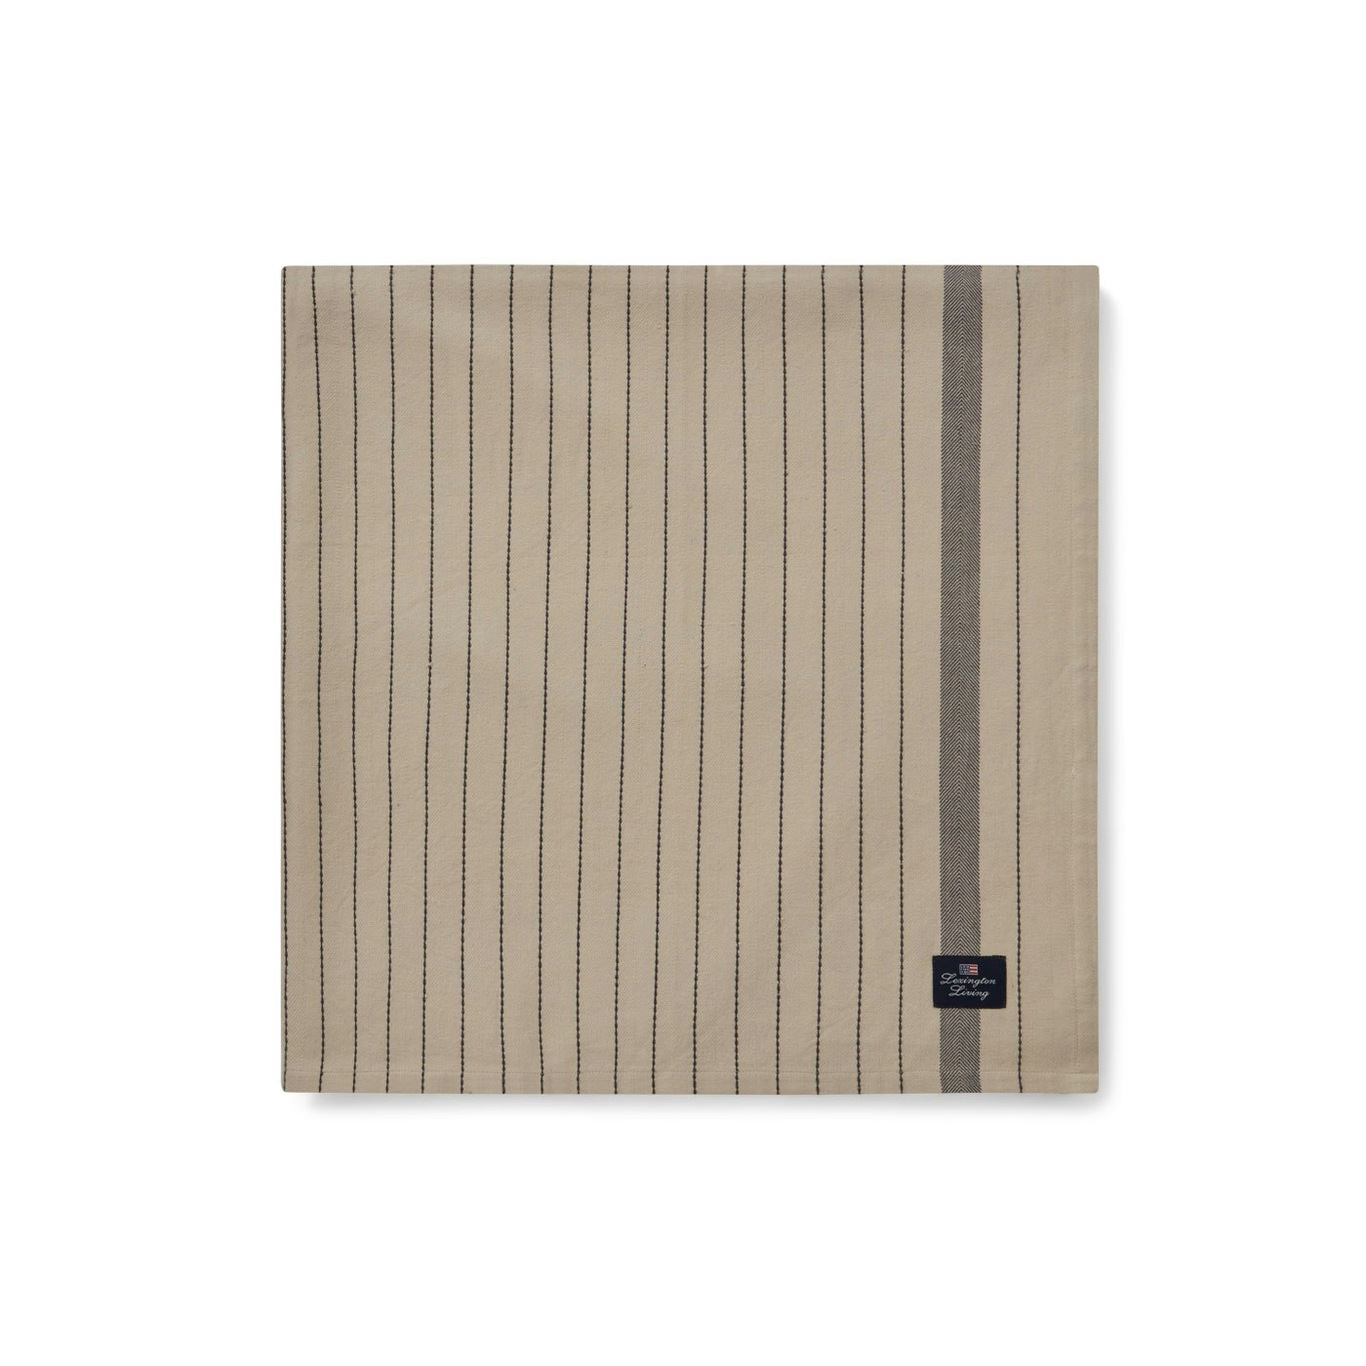 Striped Organic Cotton Duk Beige/Mørkegrå, 150x350 cm